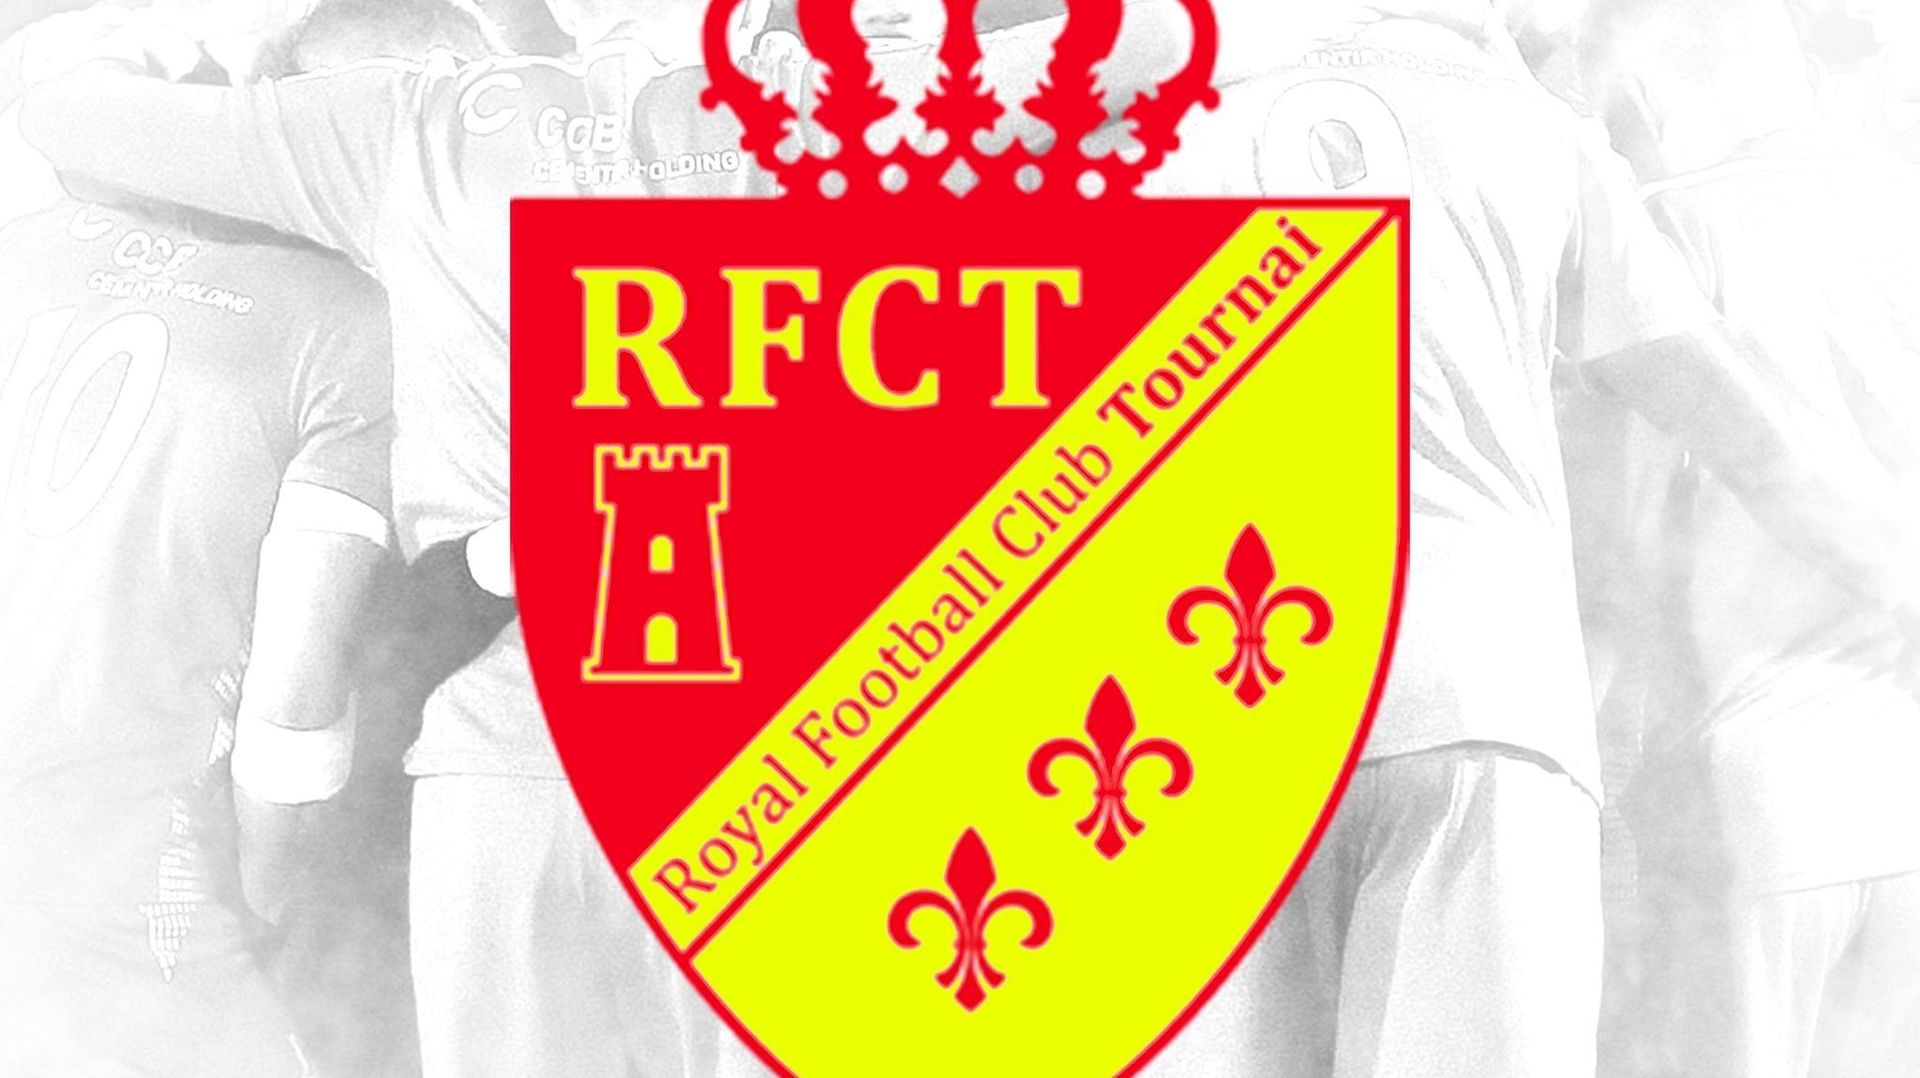 RFC Tournai